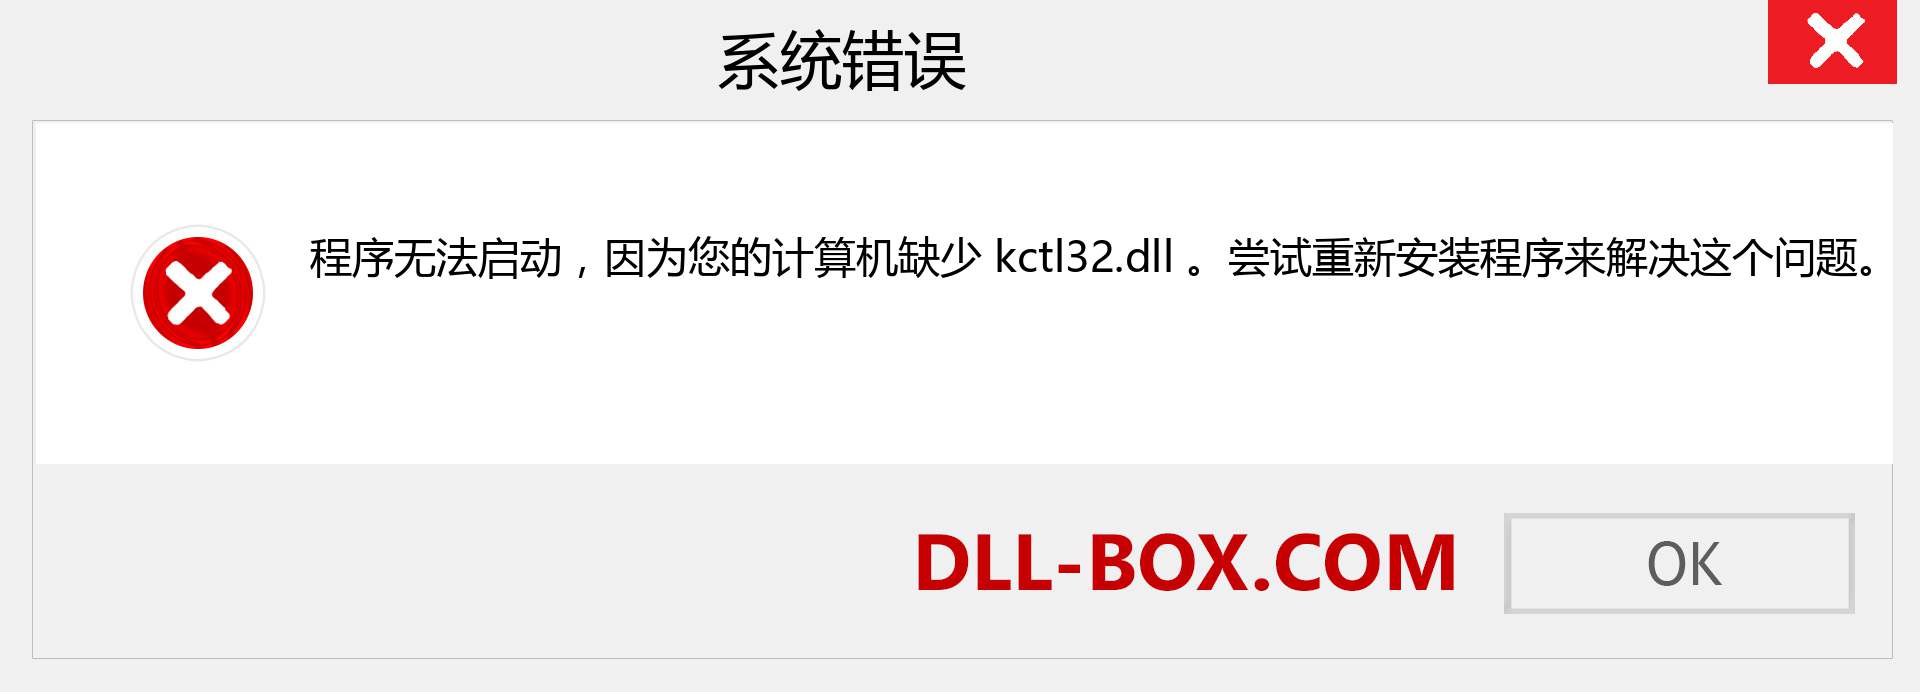 kctl32.dll 文件丢失？。 适用于 Windows 7、8、10 的下载 - 修复 Windows、照片、图像上的 kctl32 dll 丢失错误